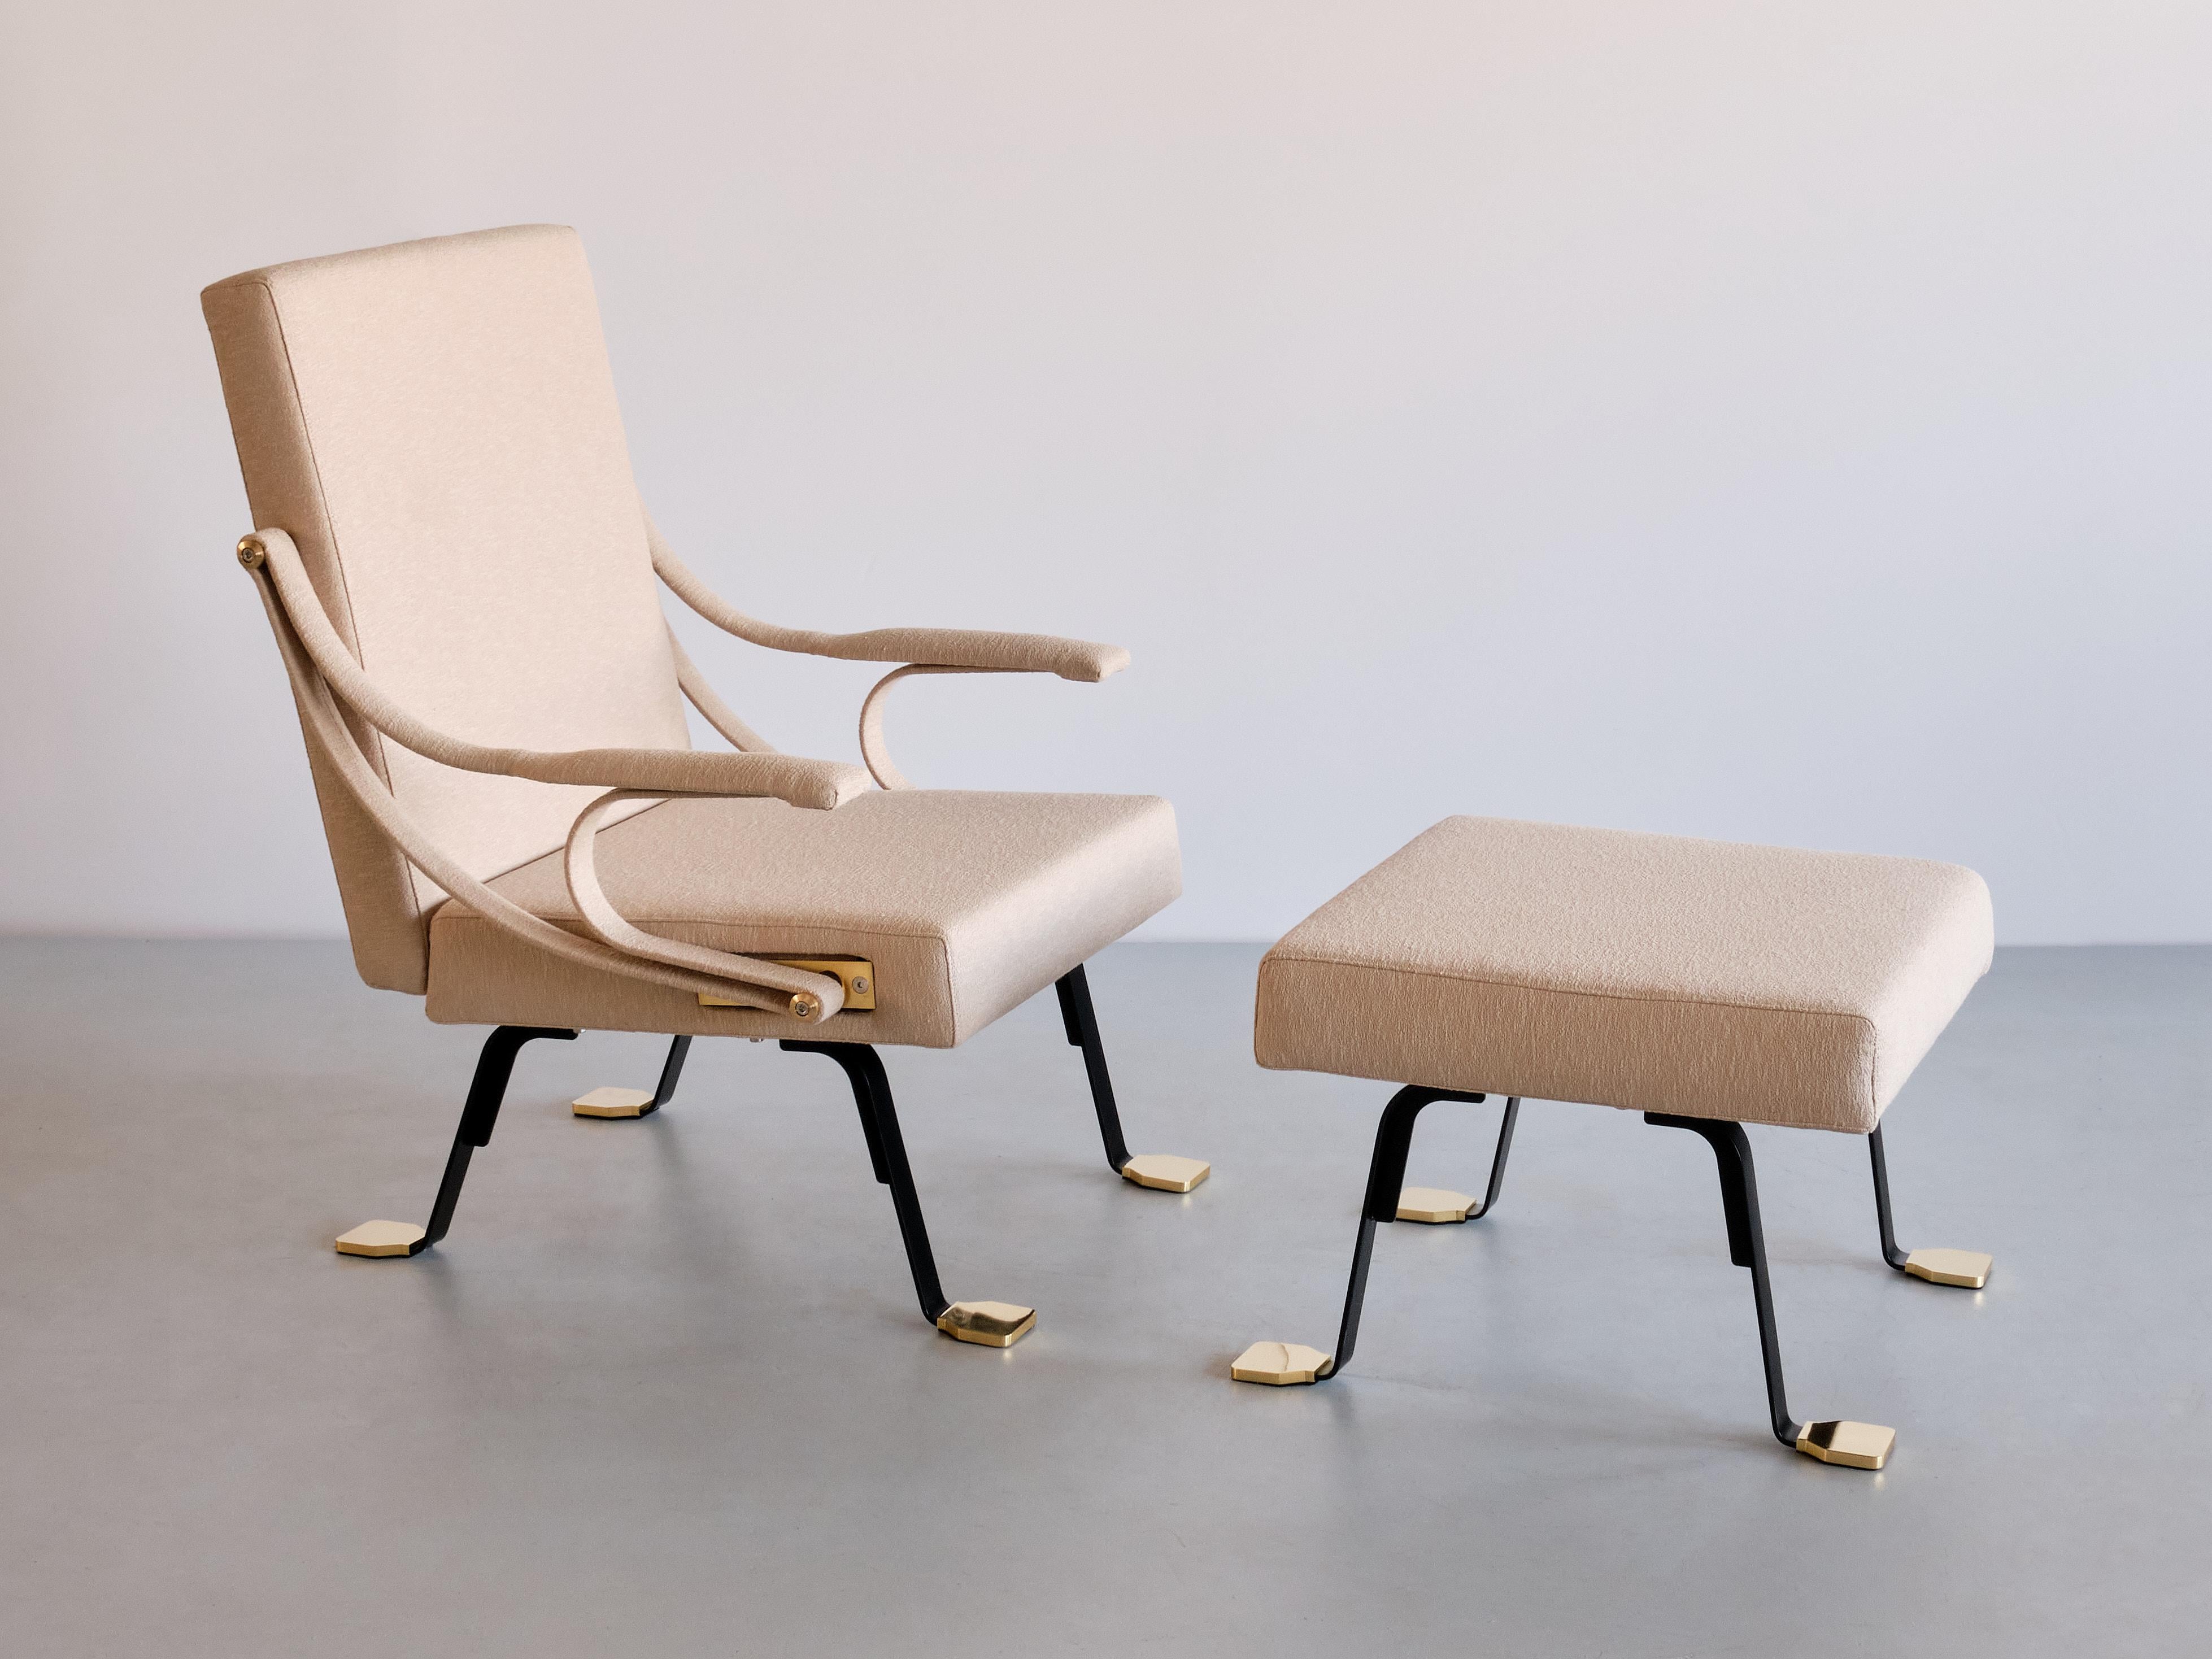 Conçue par Ignazio Gardella en 1957, la chaise longue Digamma est une chaise confortable qui plonge ses racines dans la tradition moderniste italienne tardive. Sa construction rationnelle comprend deux sections géométriques - le dossier et l'assise